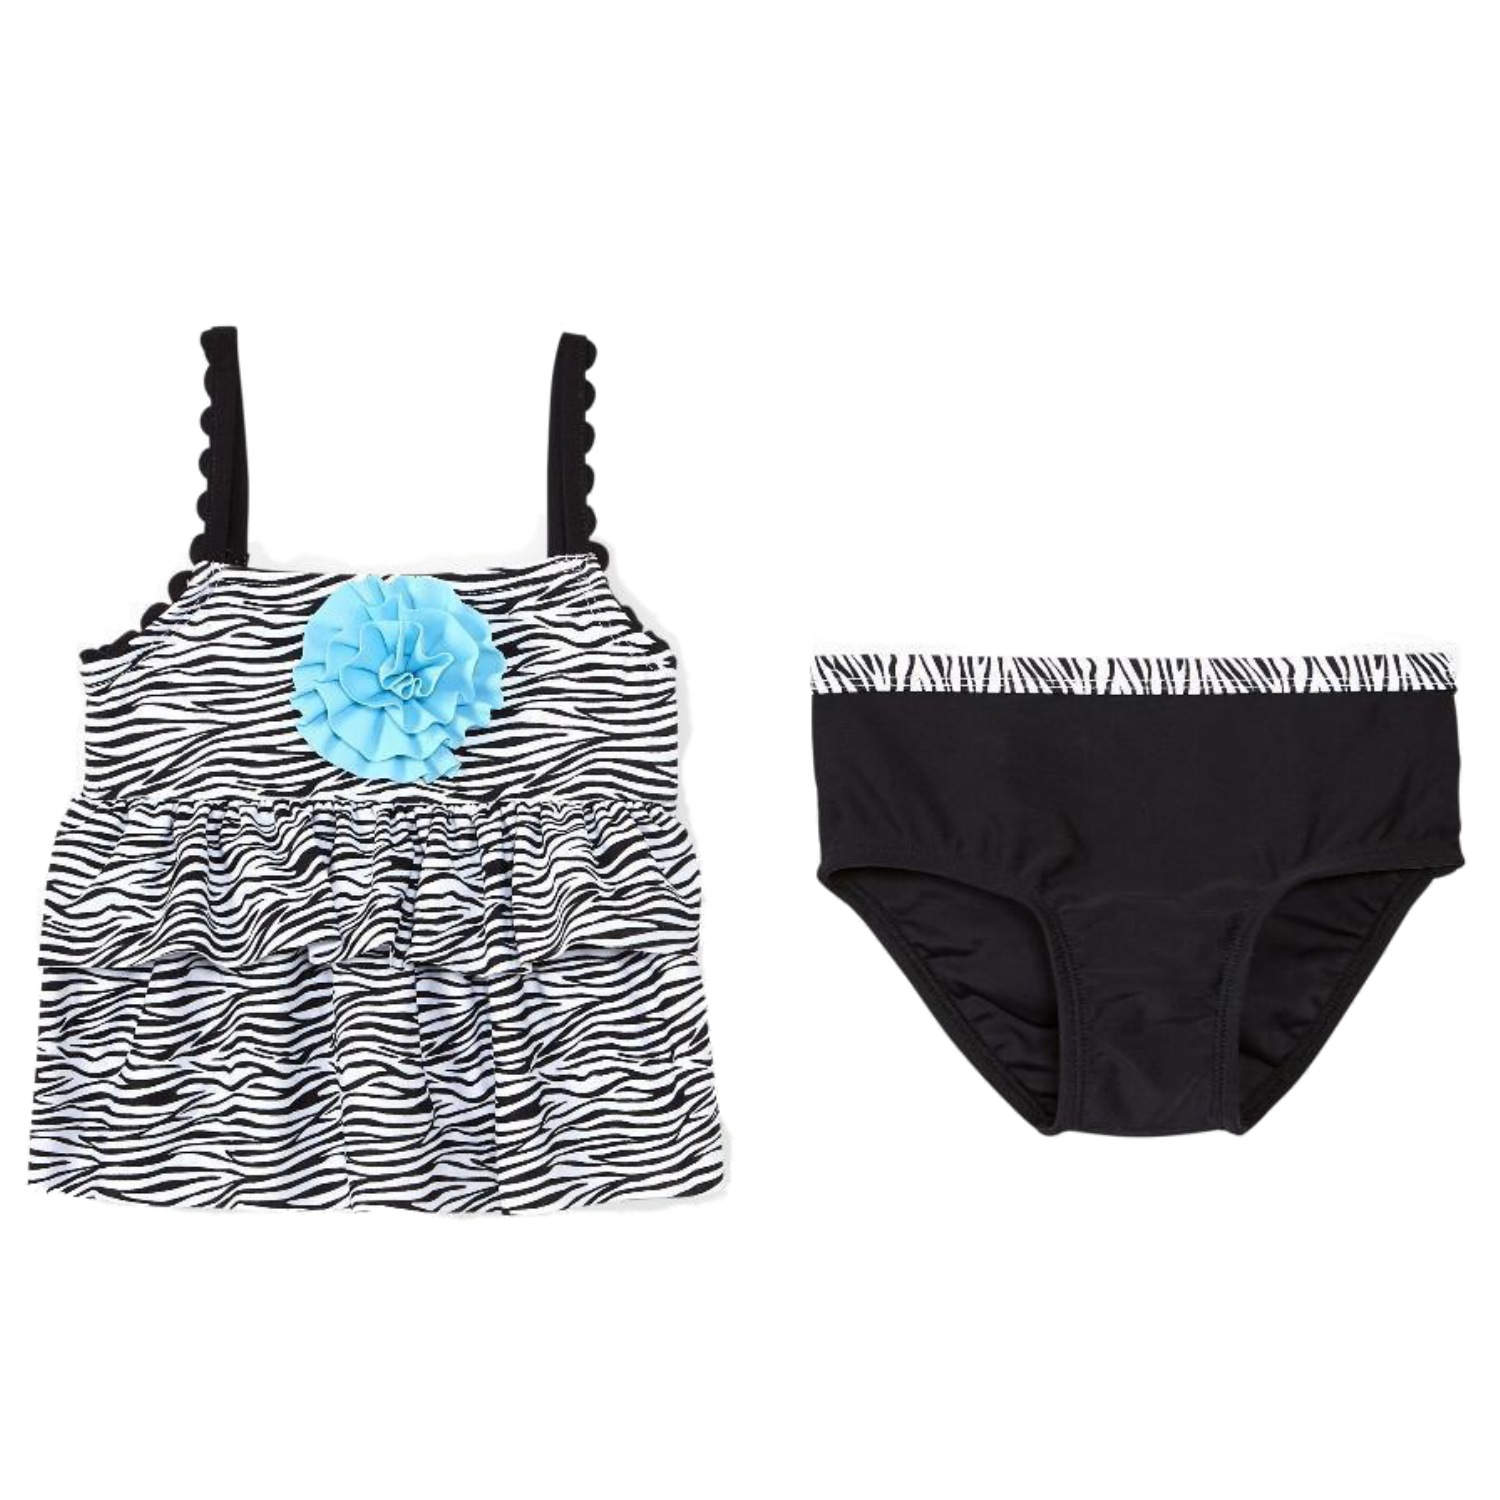 KOALA Infant & Toddler Girls Black & Blue Zebra Print 2 Pc Tankini Swimming Suit 3-6m